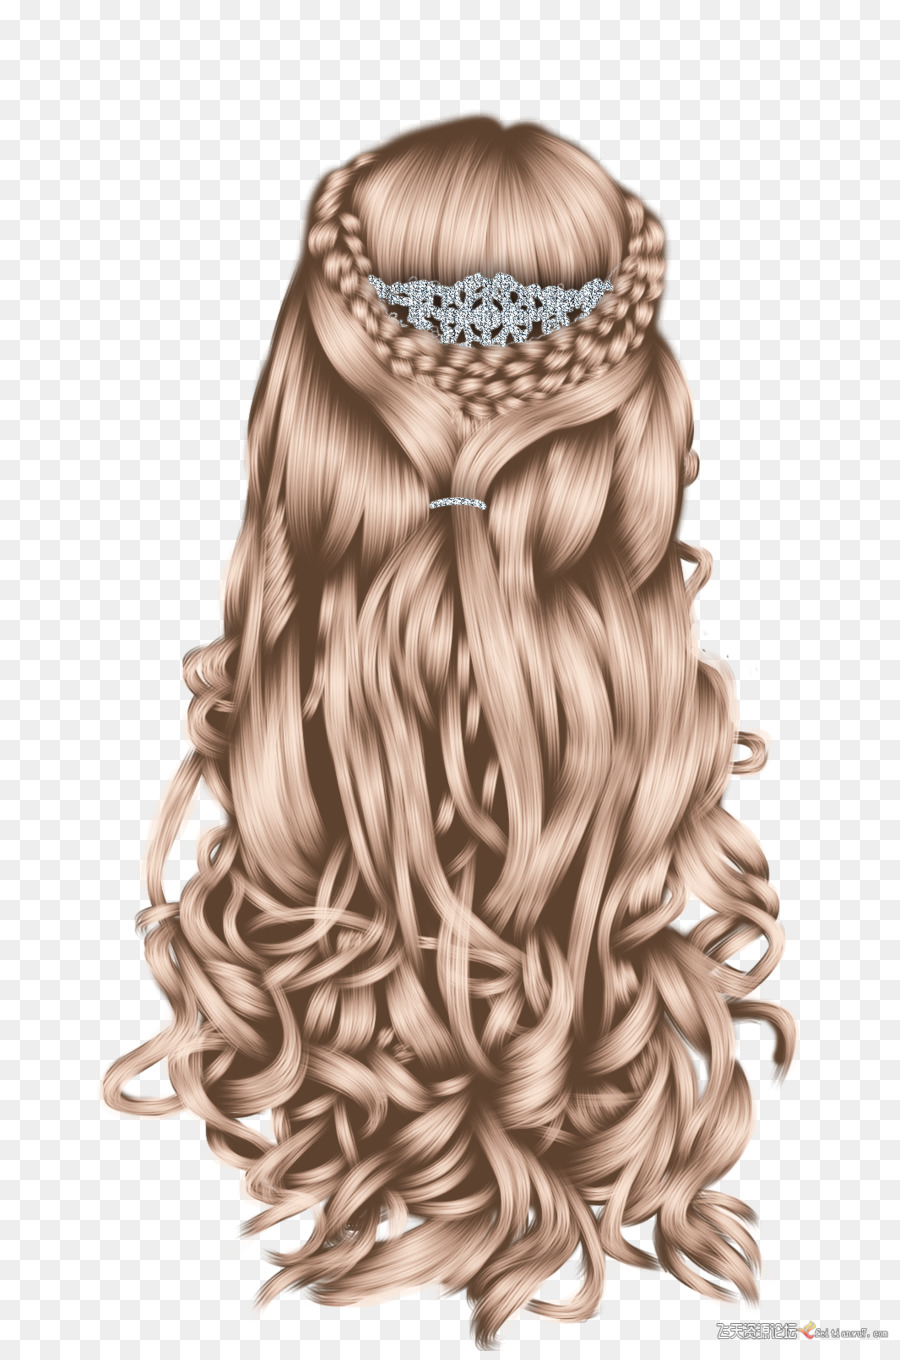 Frisur Zopf Perücke Blond - Prinzessin Geflochtene Haare